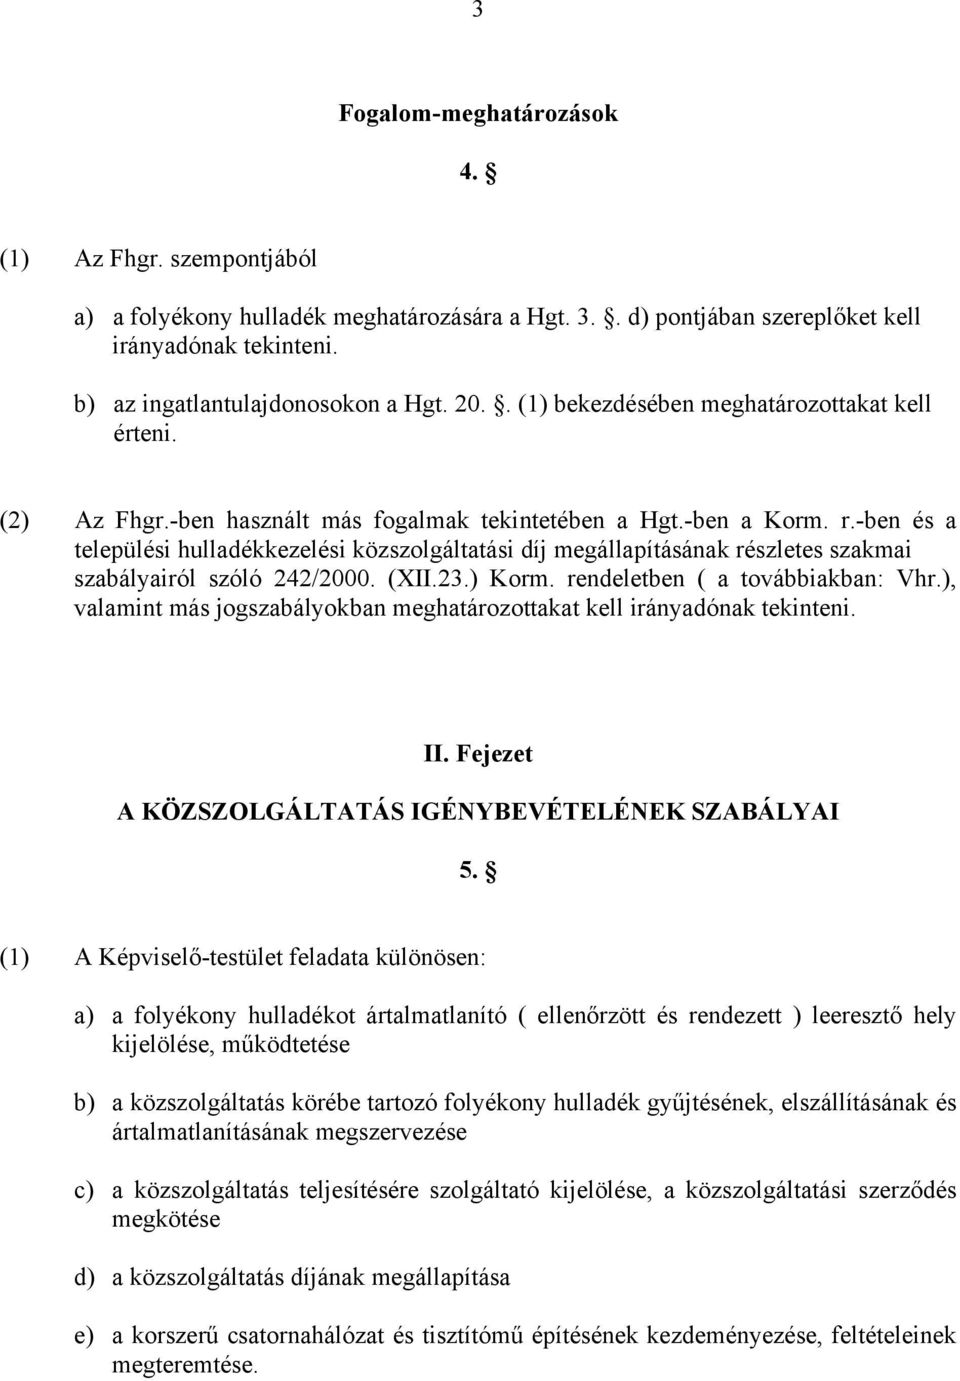 -ben és a települési hulladékkezelési közszolgáltatási díj megállapításának részletes szakmai szabályairól szóló 242/2000. (XII.23.) Korm. rendeletben ( a továbbiakban: Vhr.